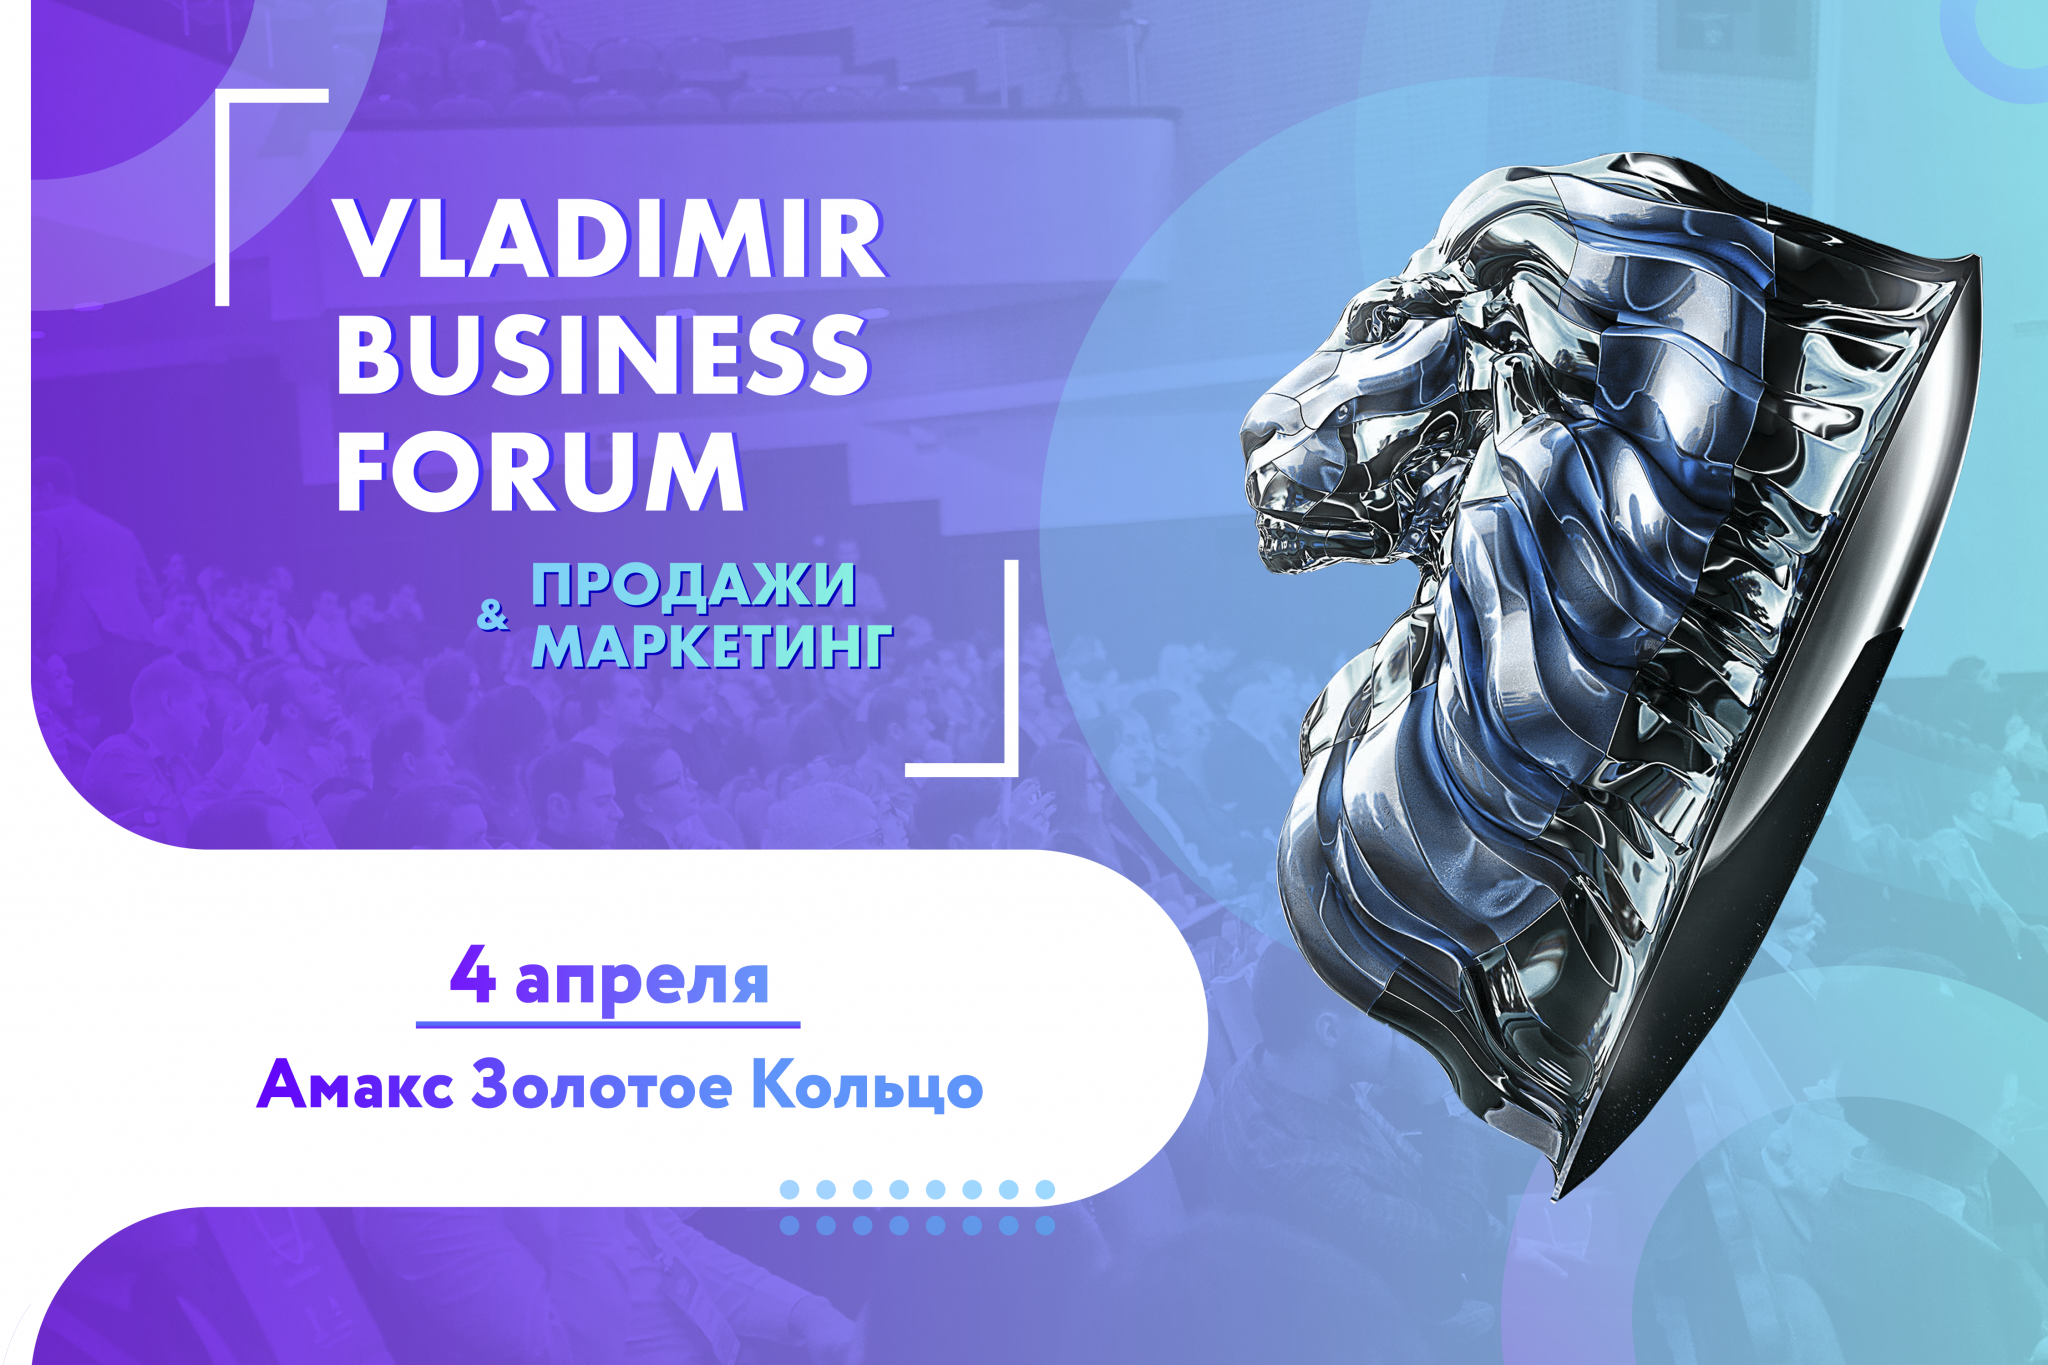 Во Владимире пройдет бизнес-форум по продажам и маркетингу